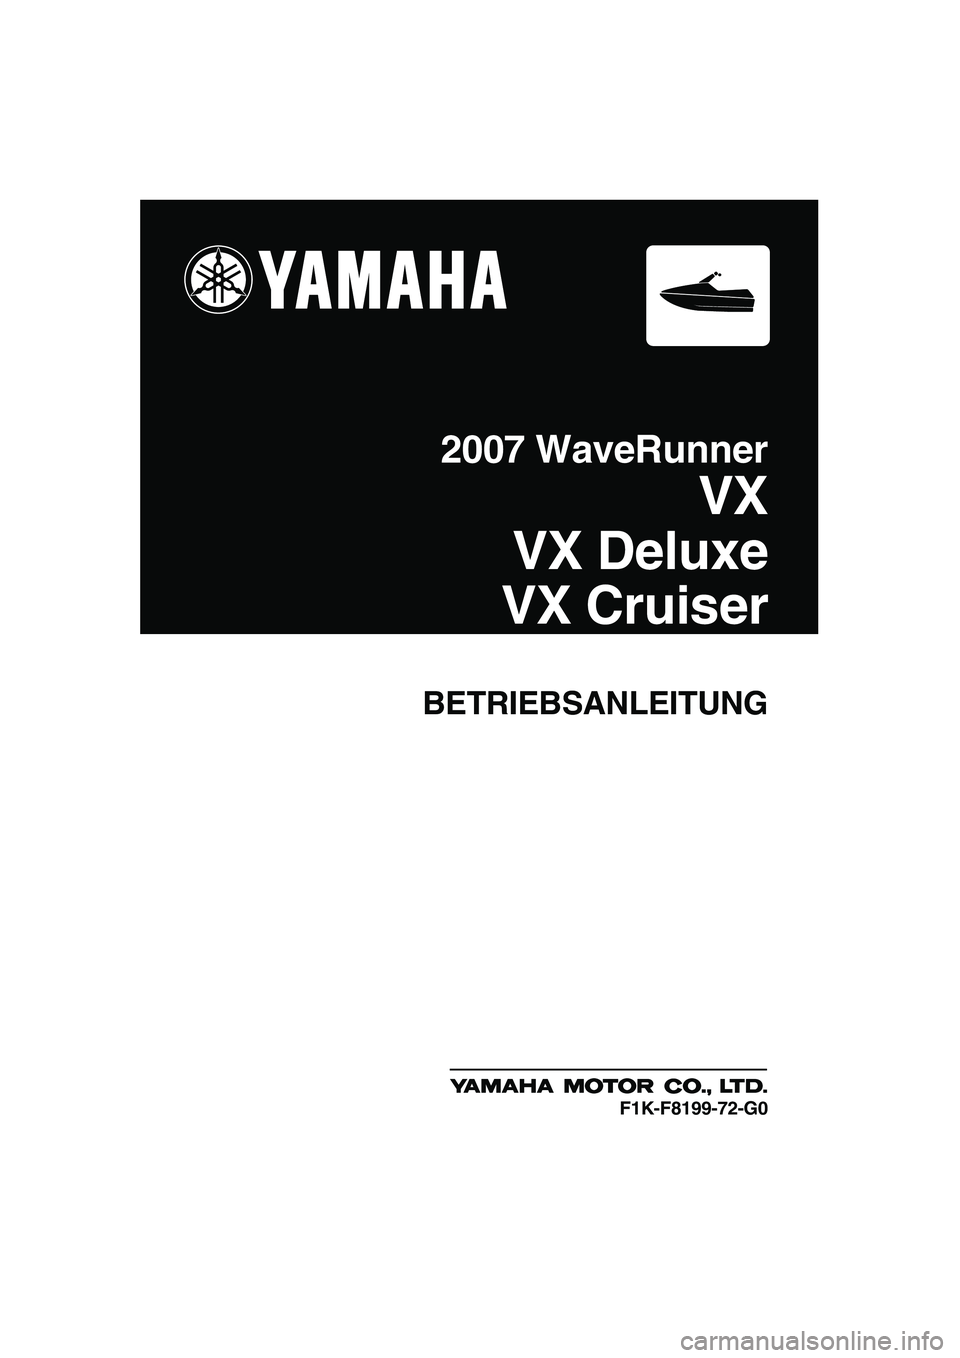 YAMAHA VX SPORT 2007  Betriebsanleitungen (in German) BETRIEBSANLEITUNG
2007 WaveRunner
VX
VX Deluxe
VX Cruiser
F1K-F8199-72-G0
UF1K72G0.book  Page 1  Thursday, August 3, 2006  10:08 AM 